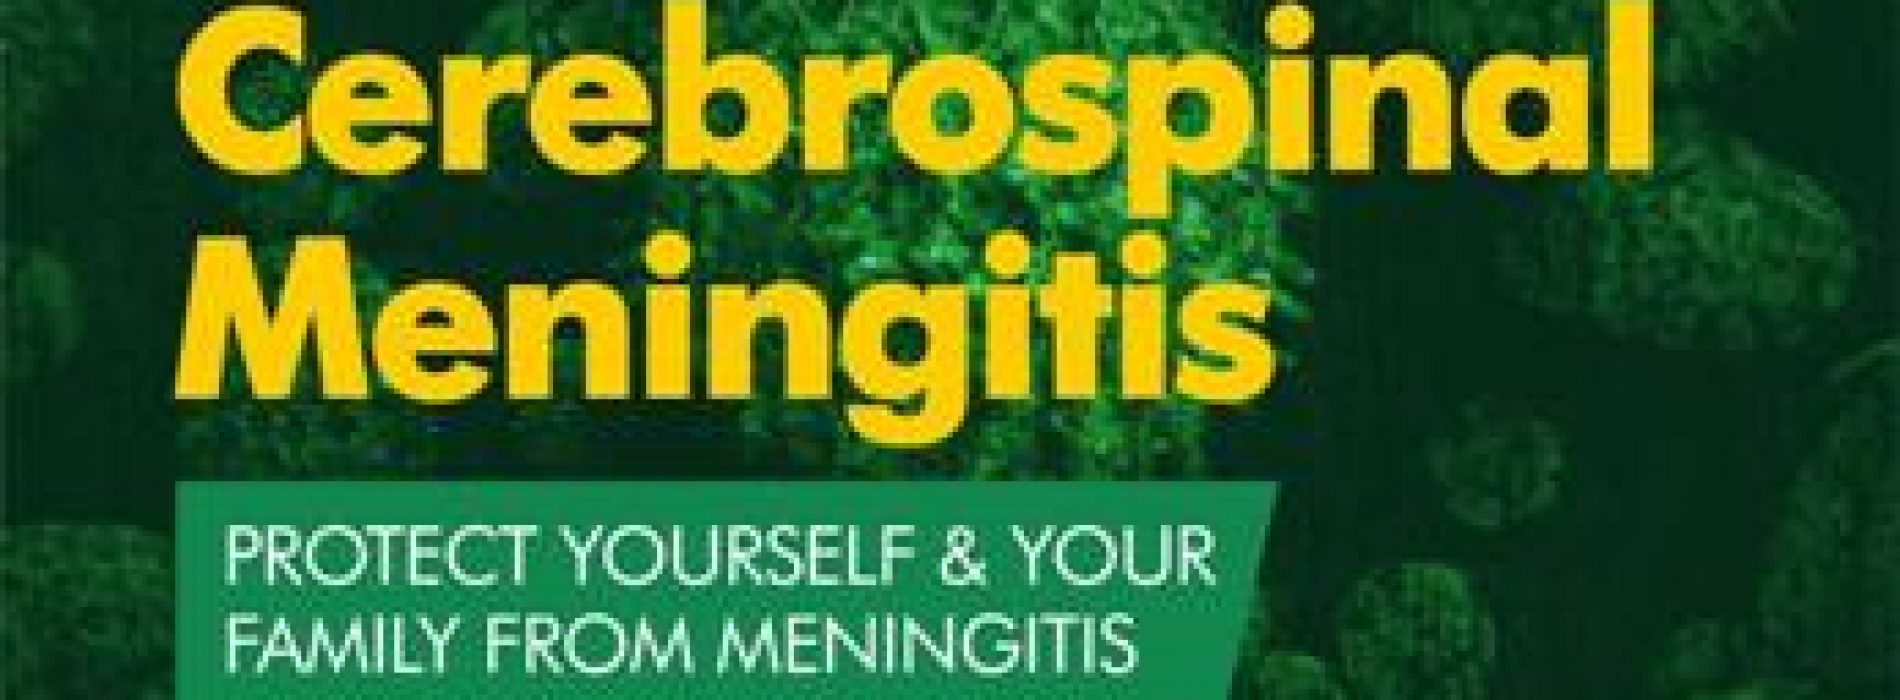 NCDC issues advisory on Cerebrospinal Meningitis